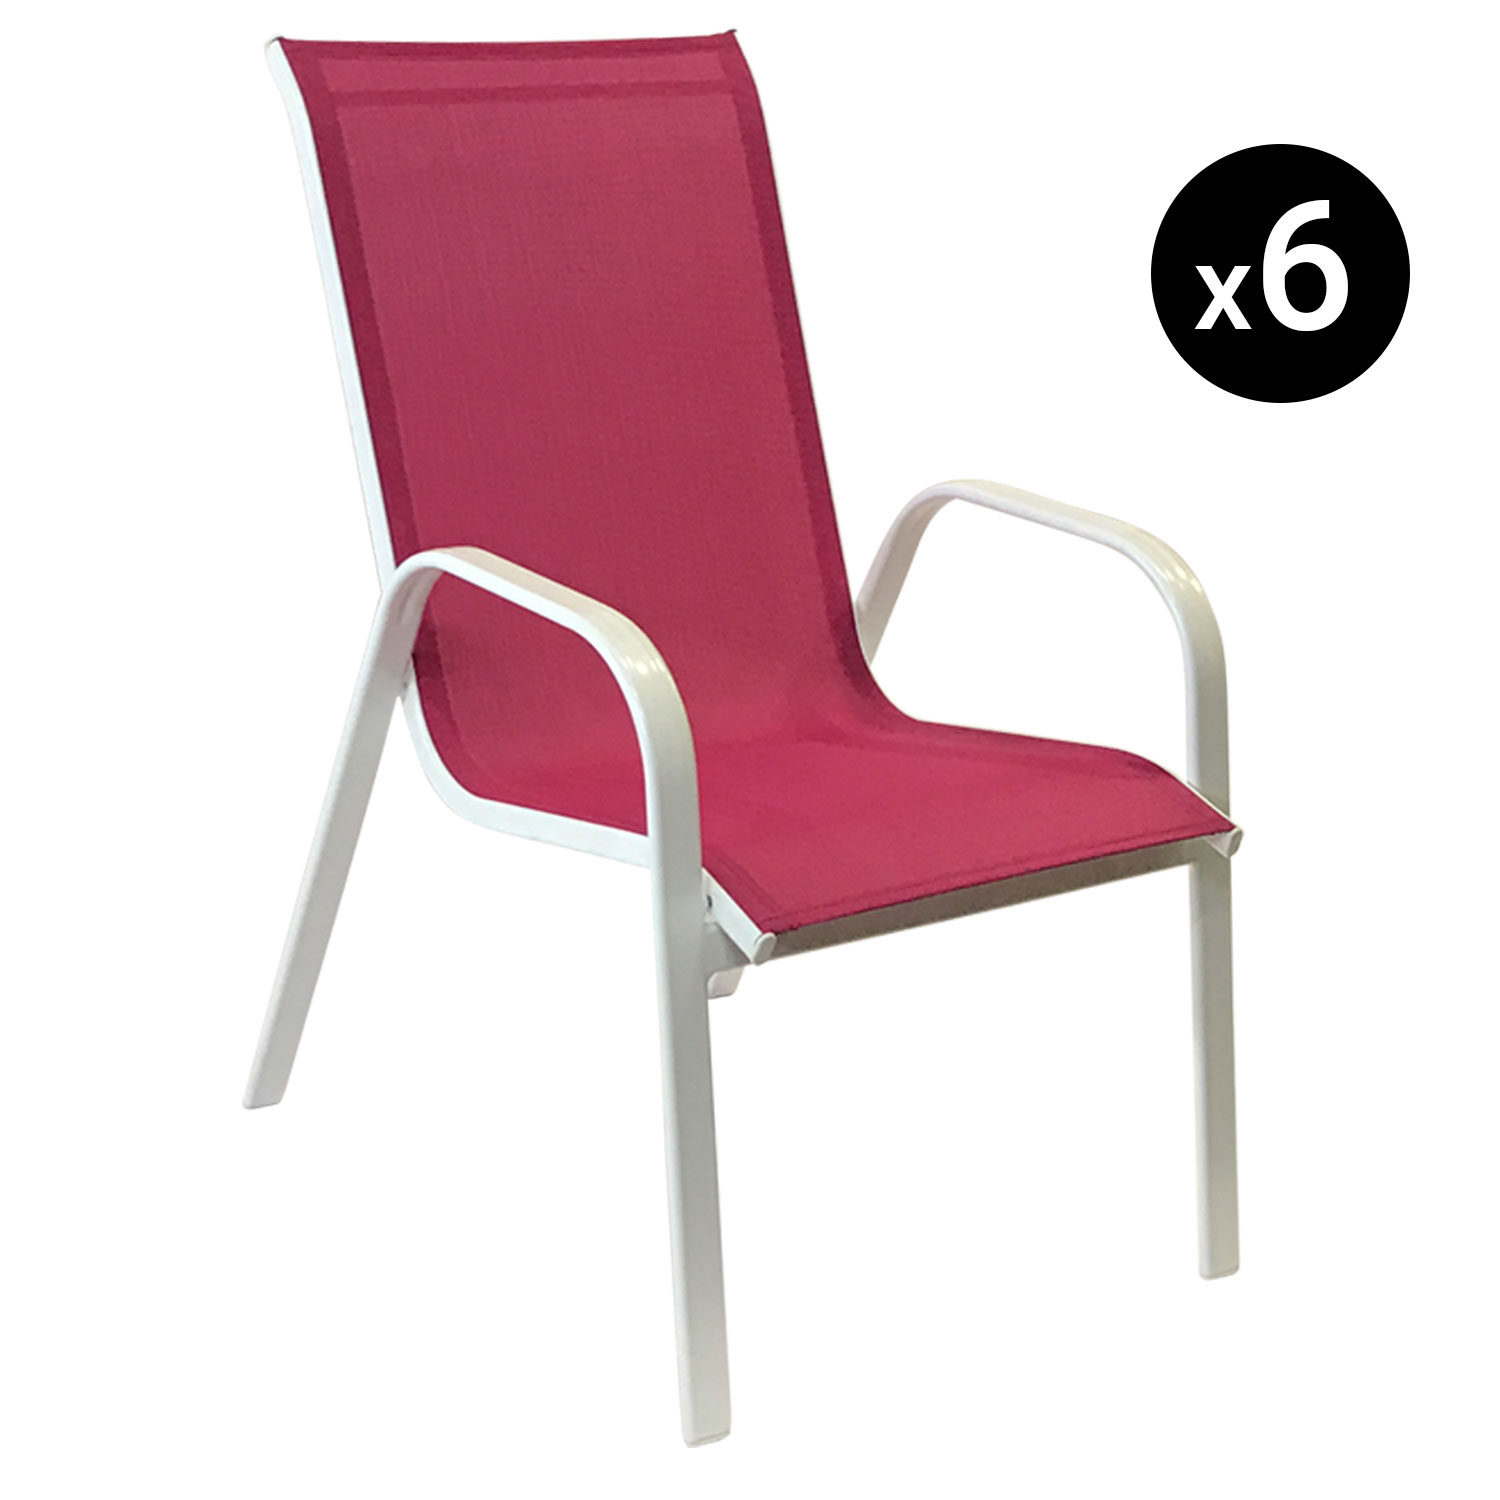 Lote de 6 sillas MARBELLA en textileneo rosa - aluminio blanco